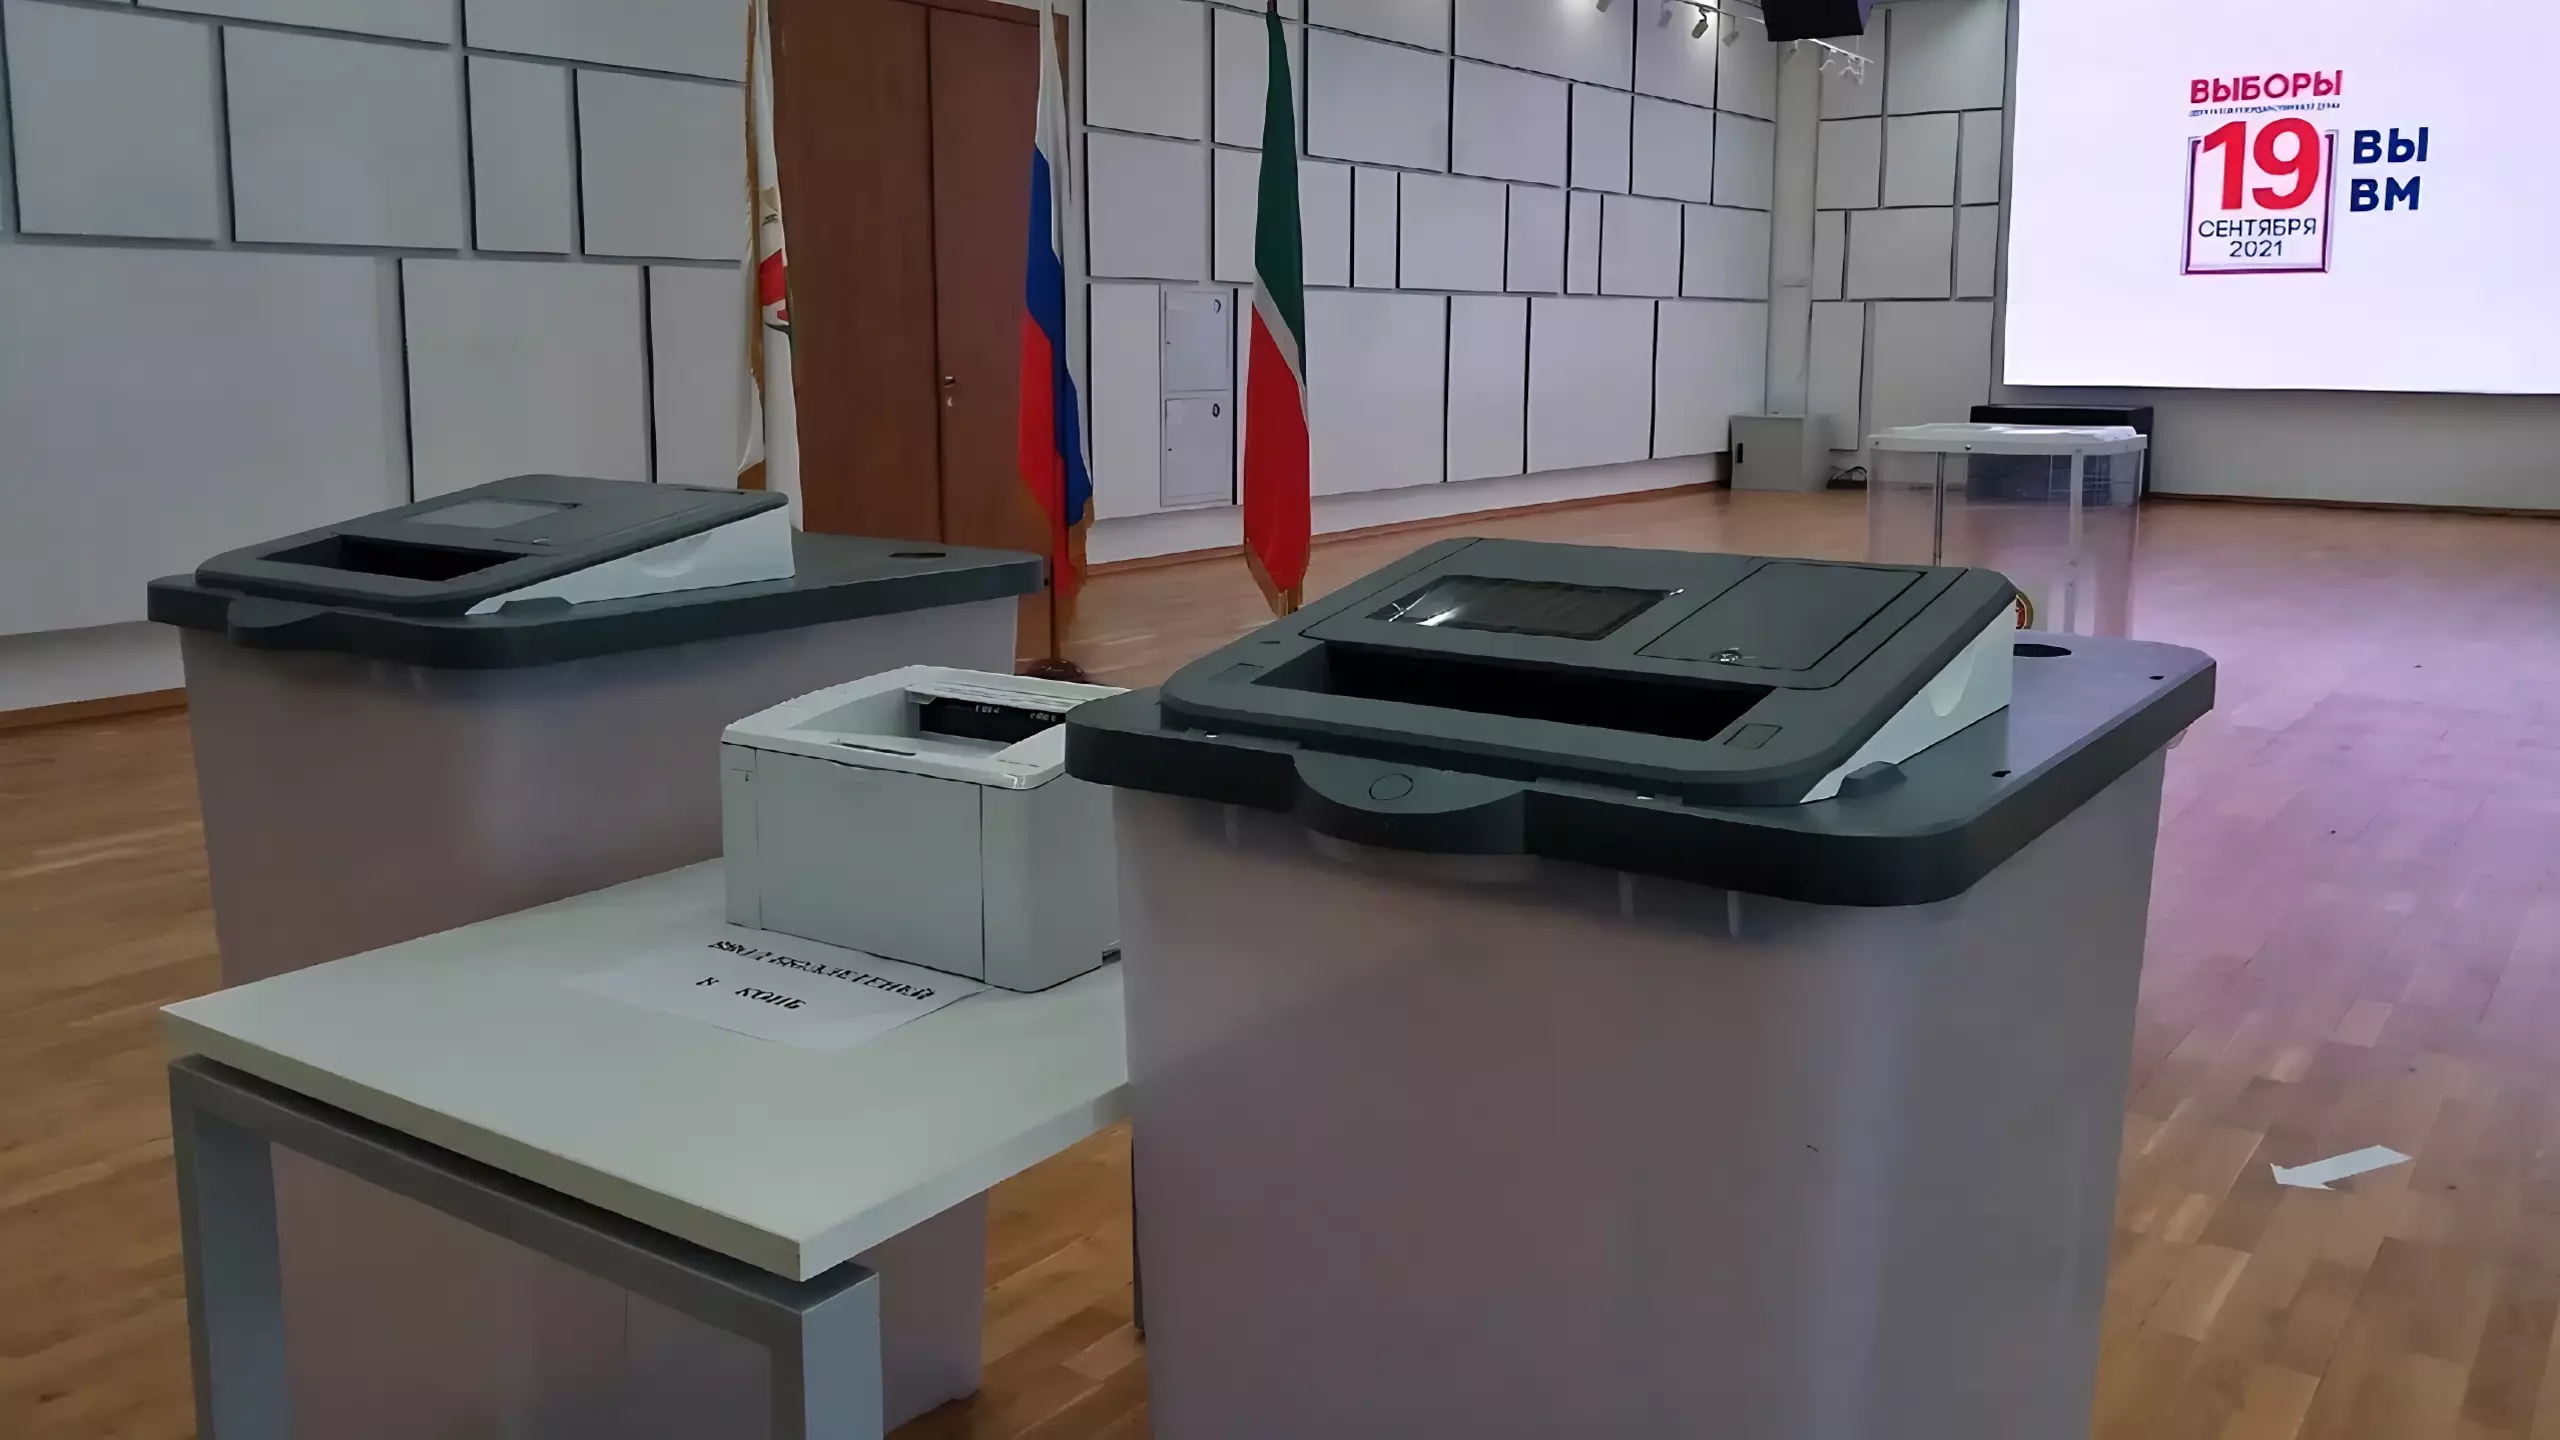 Более половины избирателей в Татарстане сходили на выборы